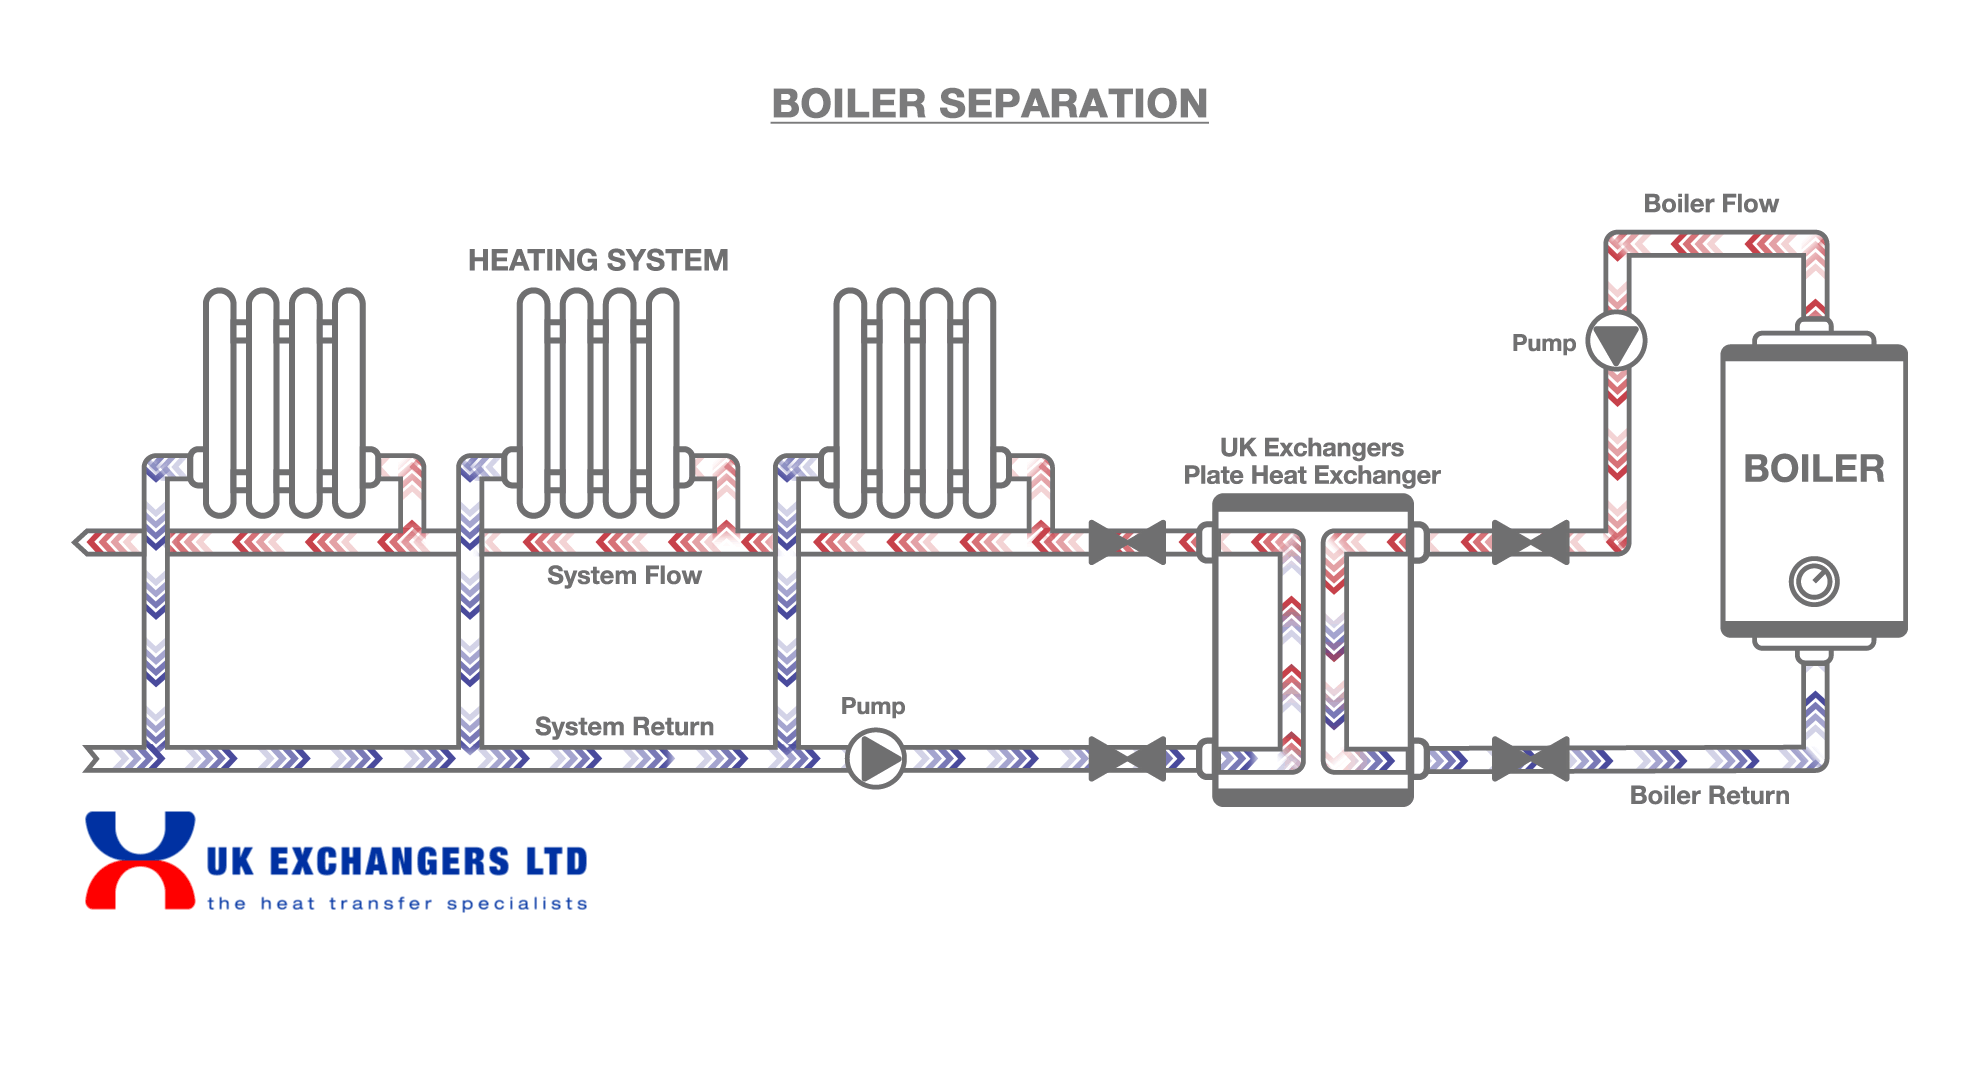 Boiler Separation